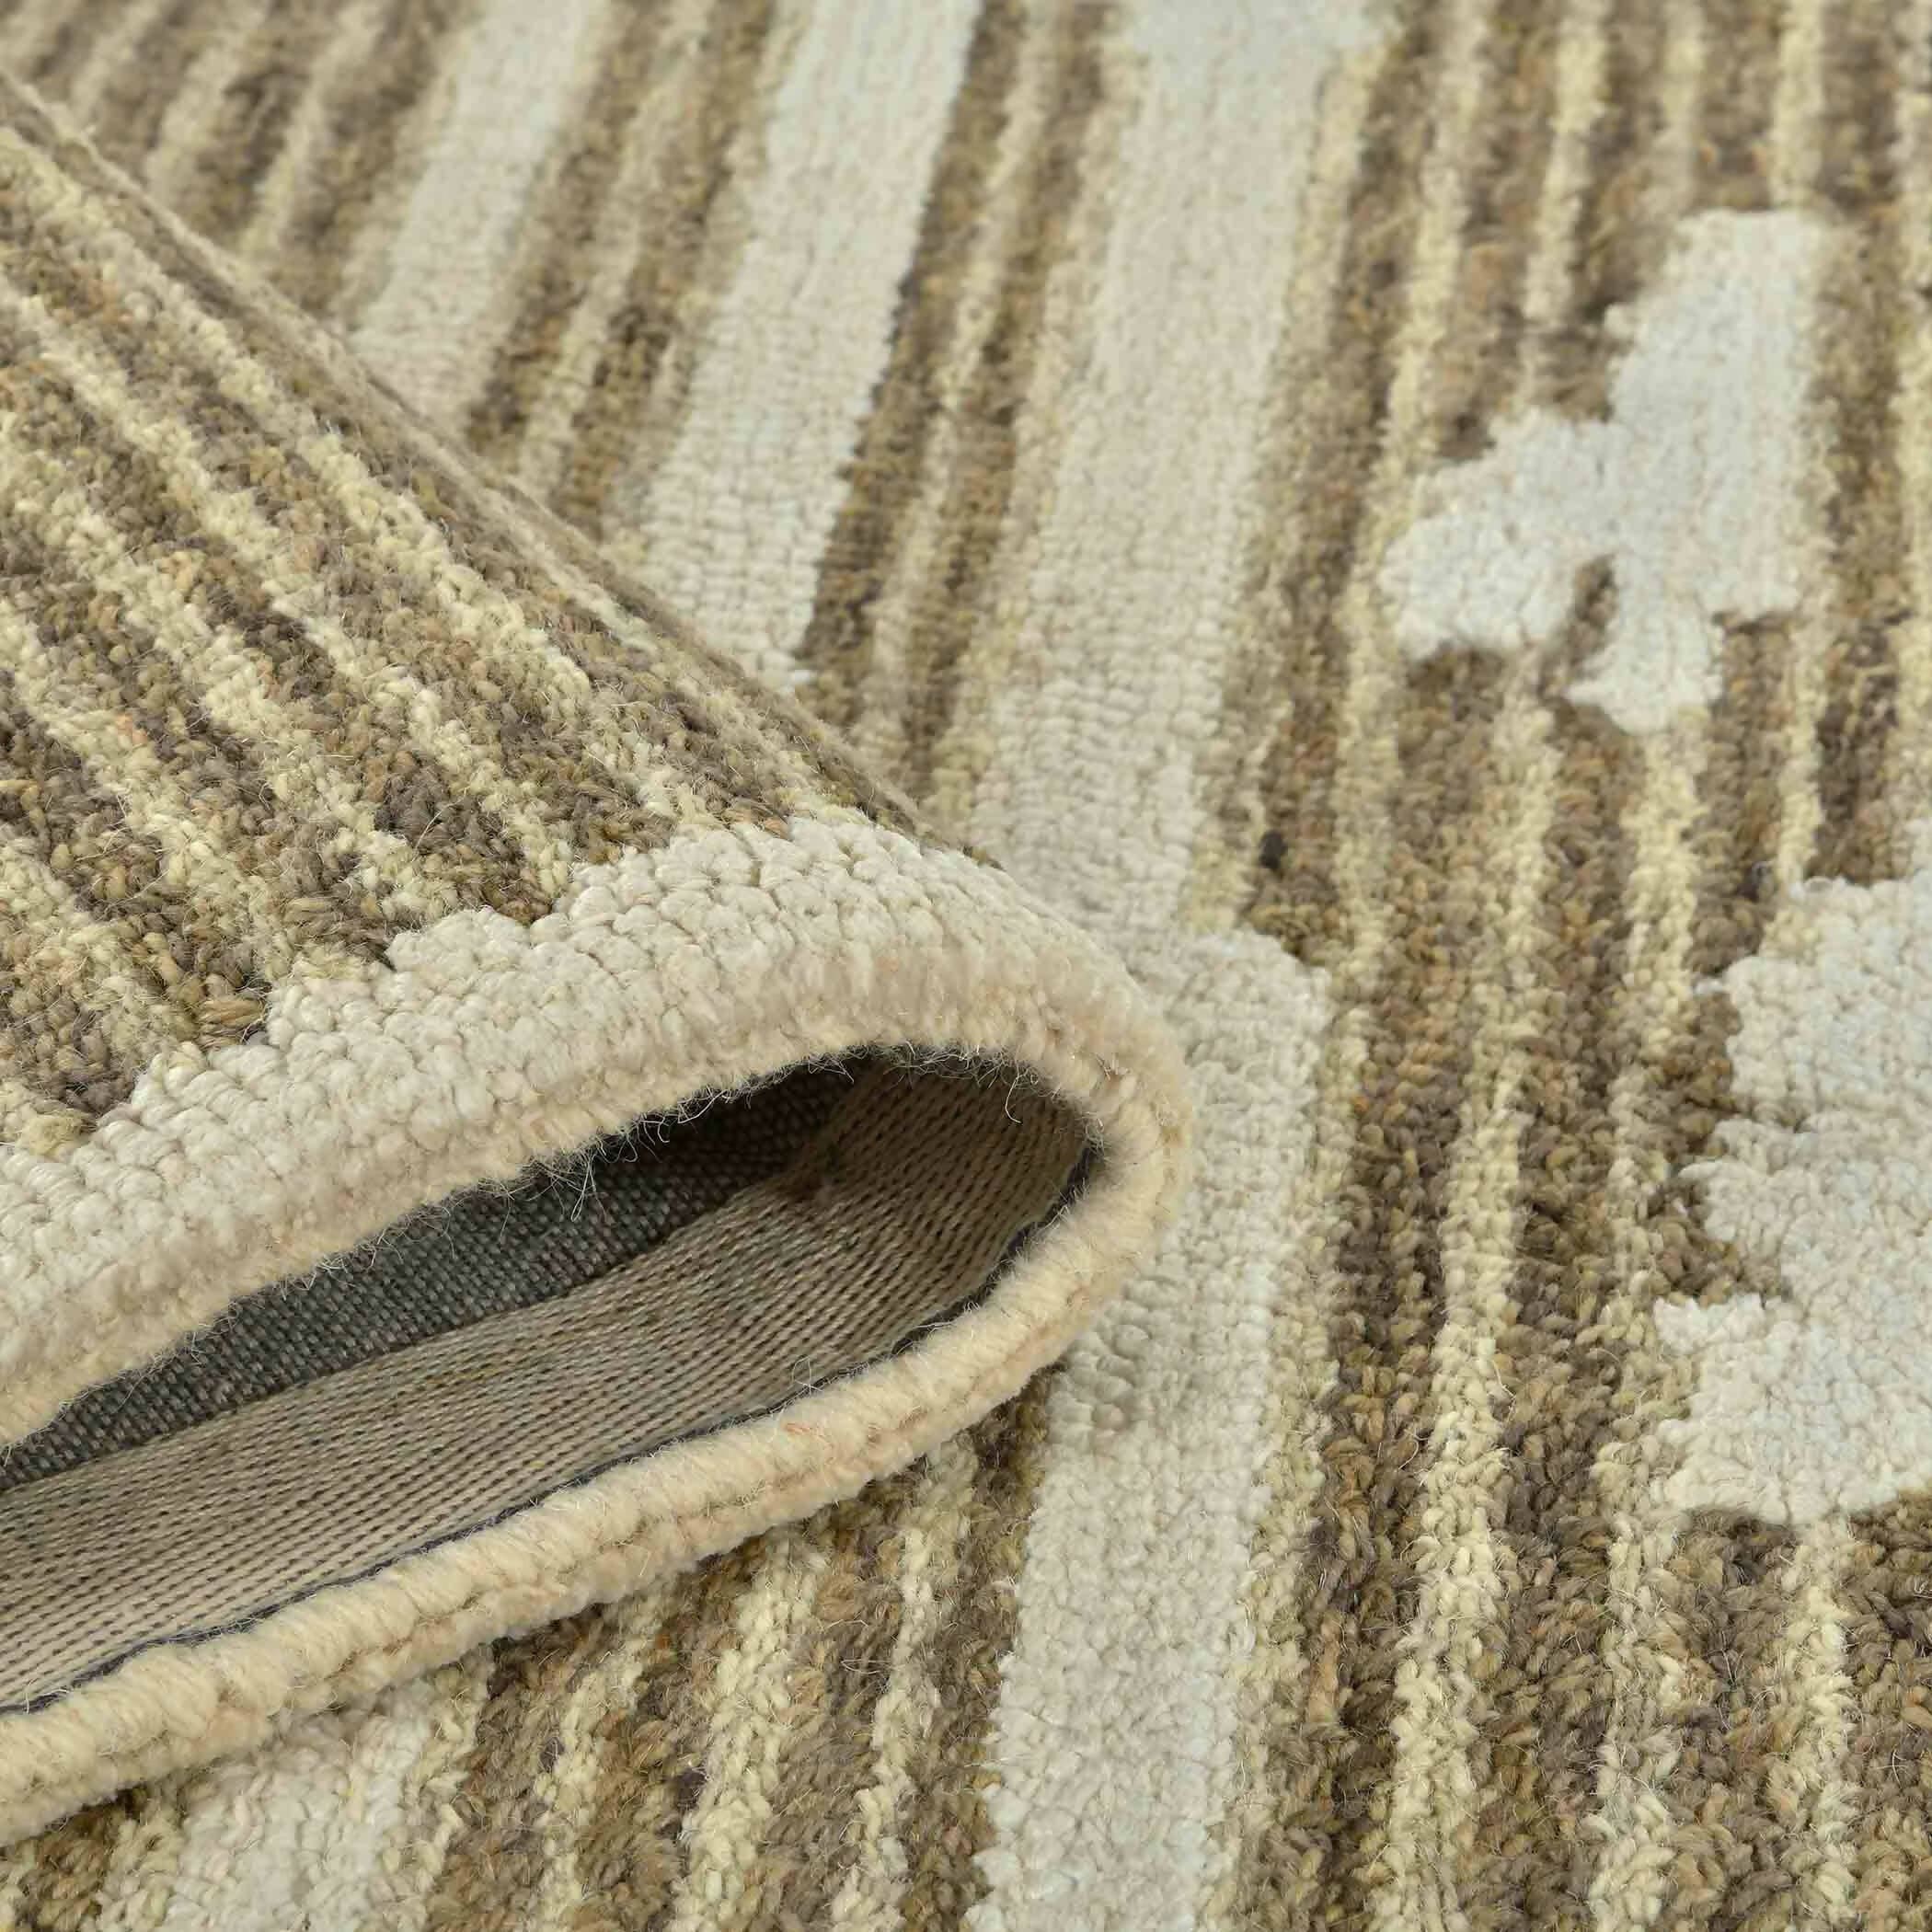 Beige Wool Chicago 8x10 Feet Hand-Tufted Carpet Rug